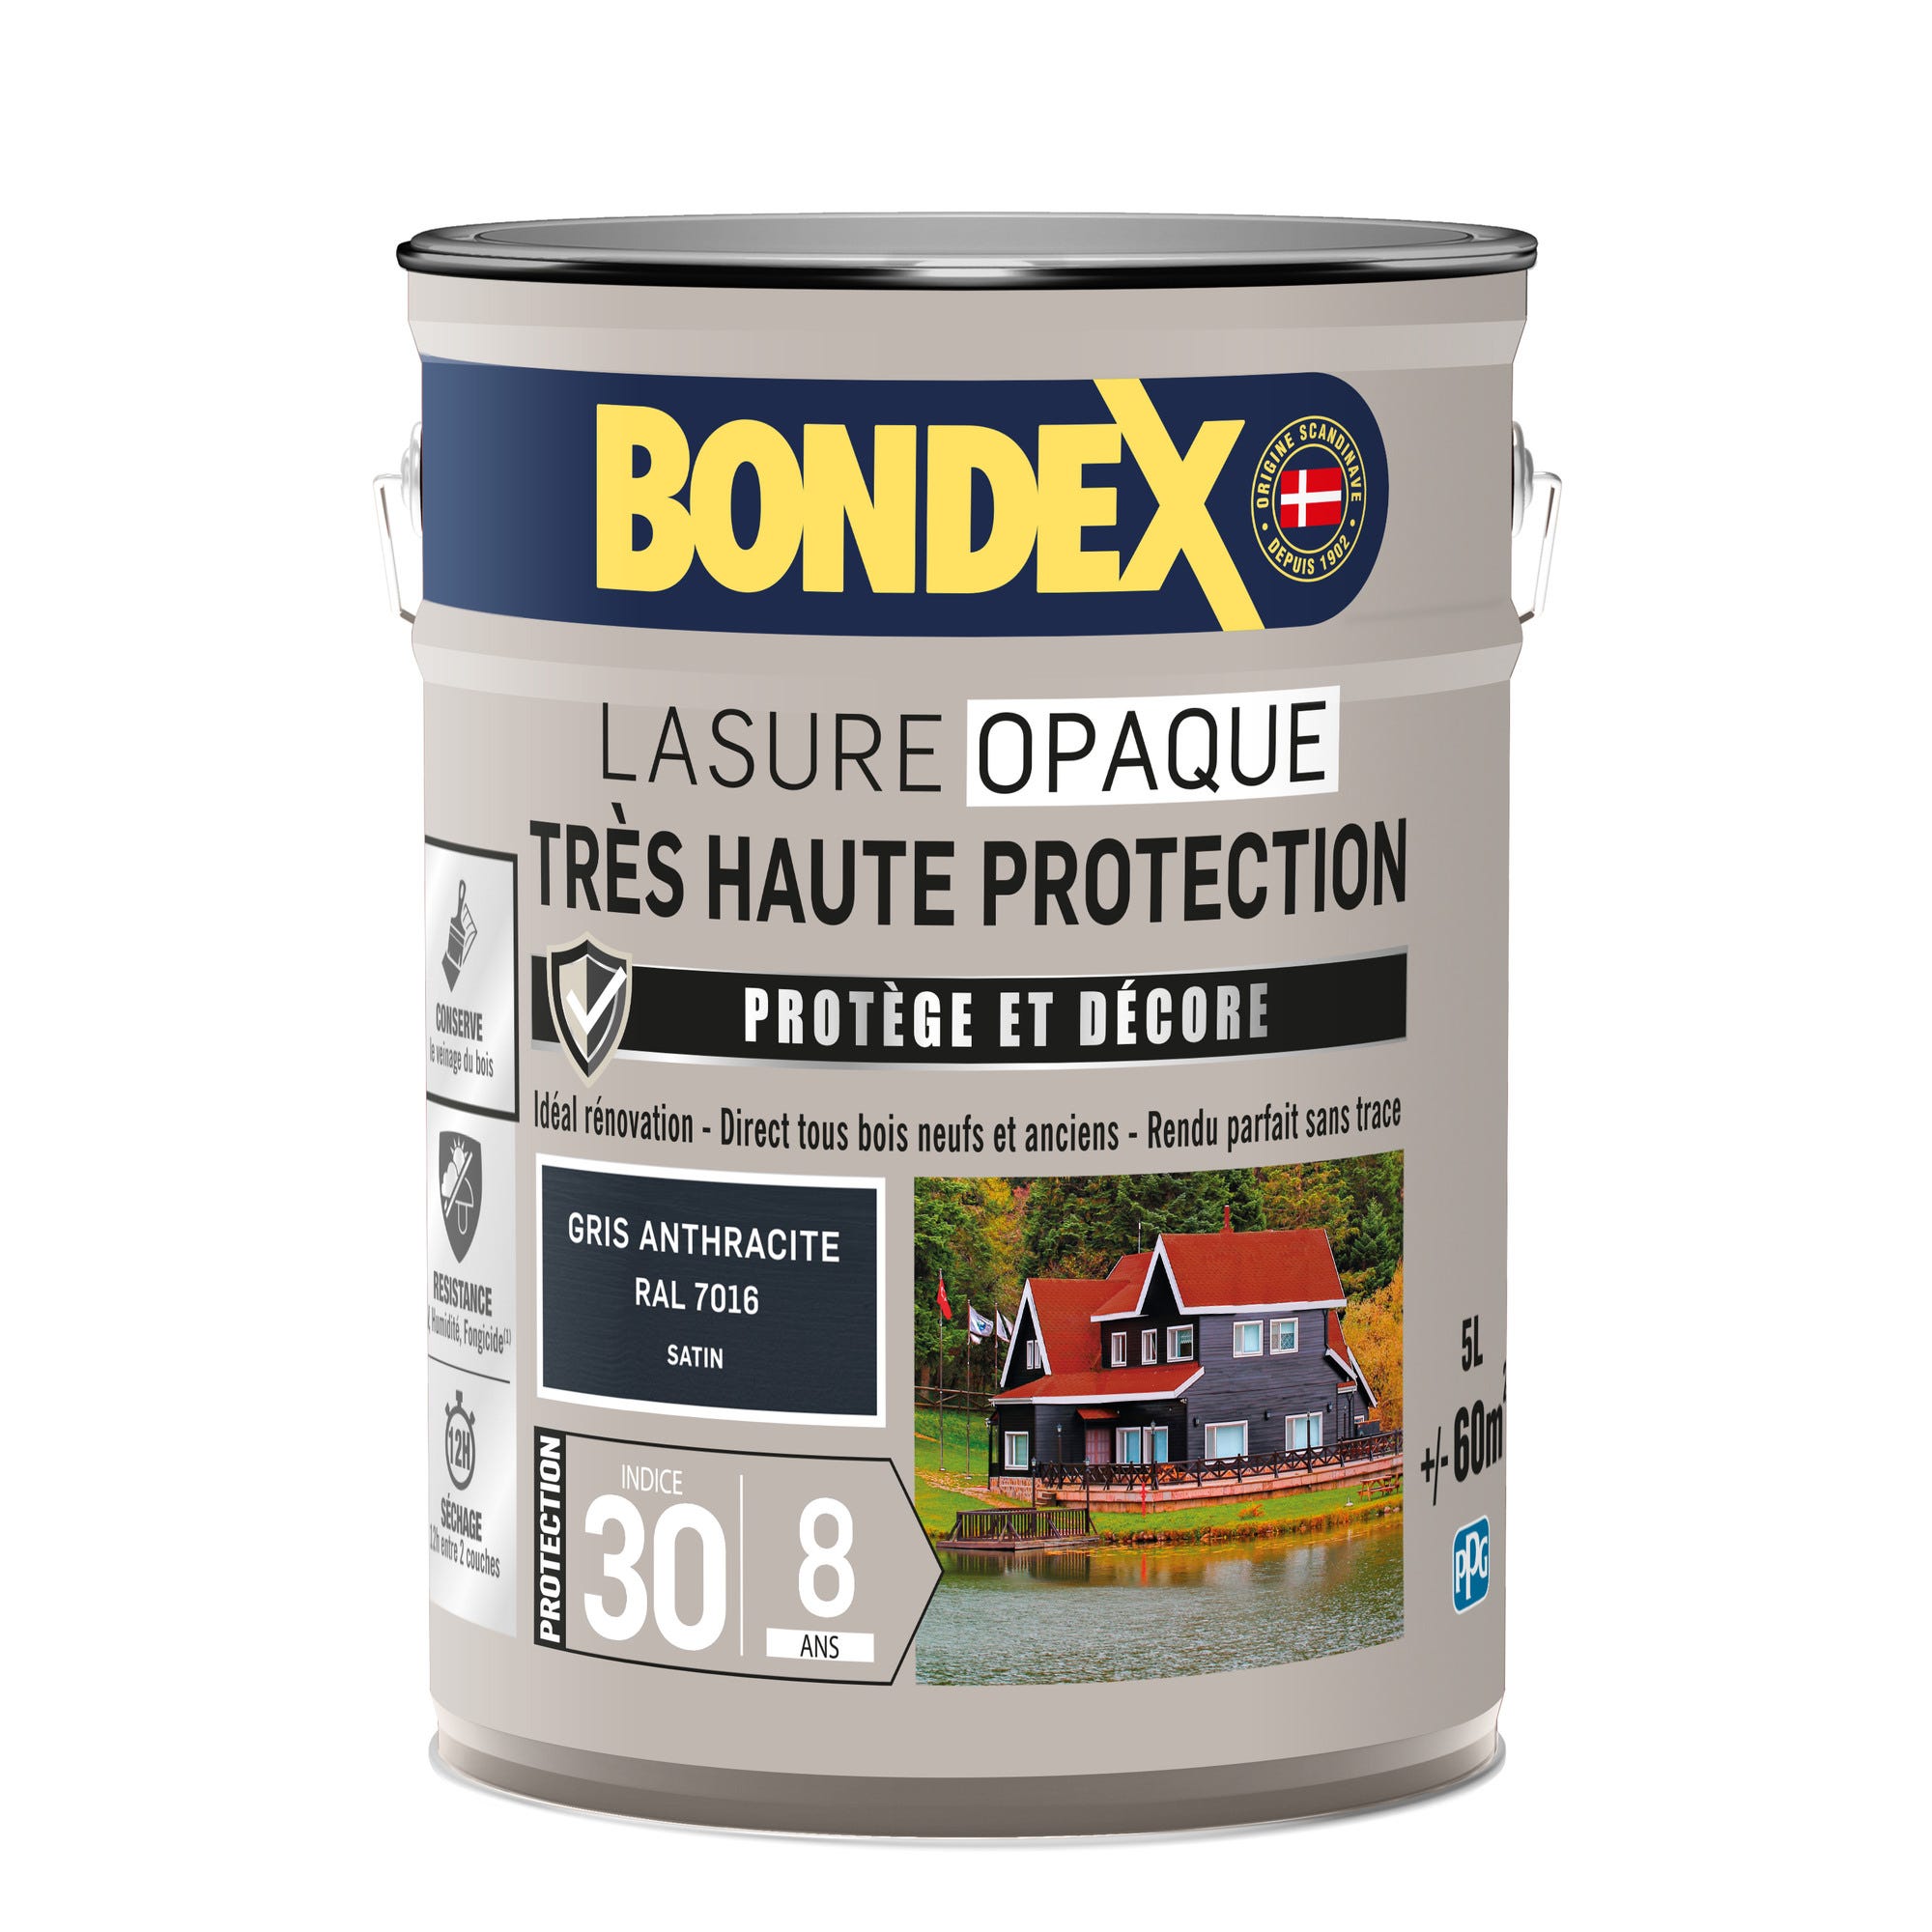 Lasure opaque très haute protection 8 ans gris anthracite 5 L - BONDEX 2